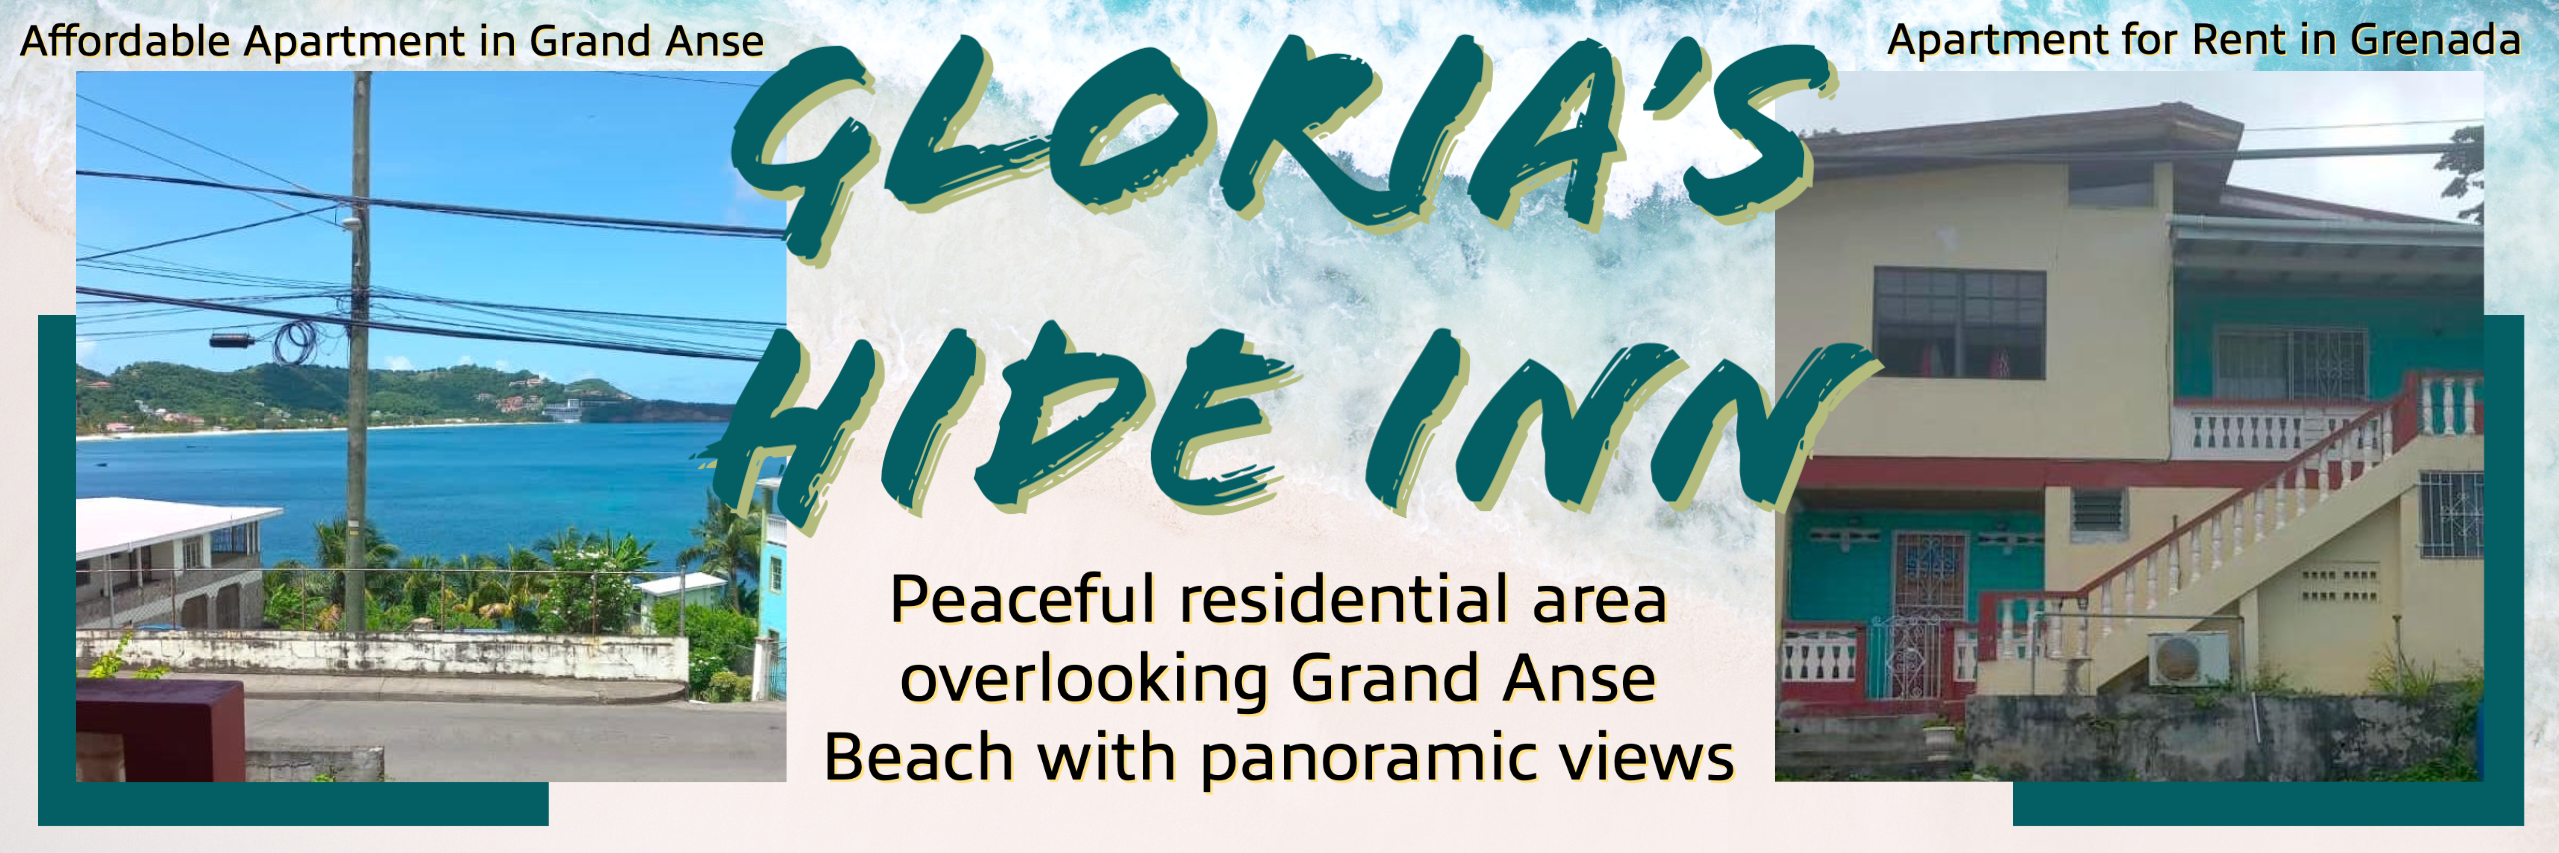 Glorias Hide Inn Apartment Rental in Grenada